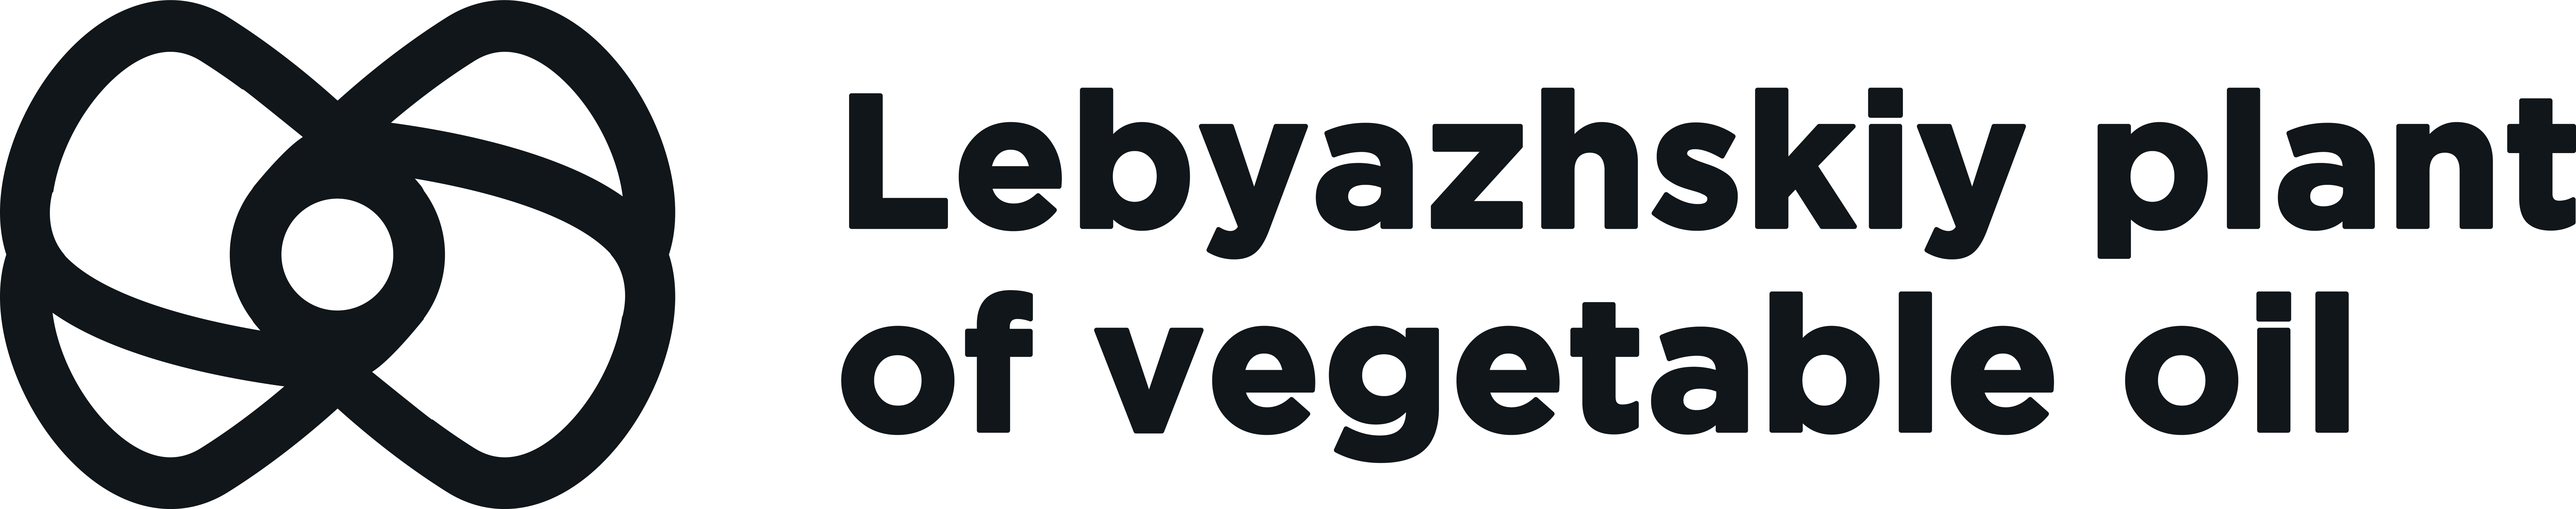 Lebyazhsky plant of vegetable oil